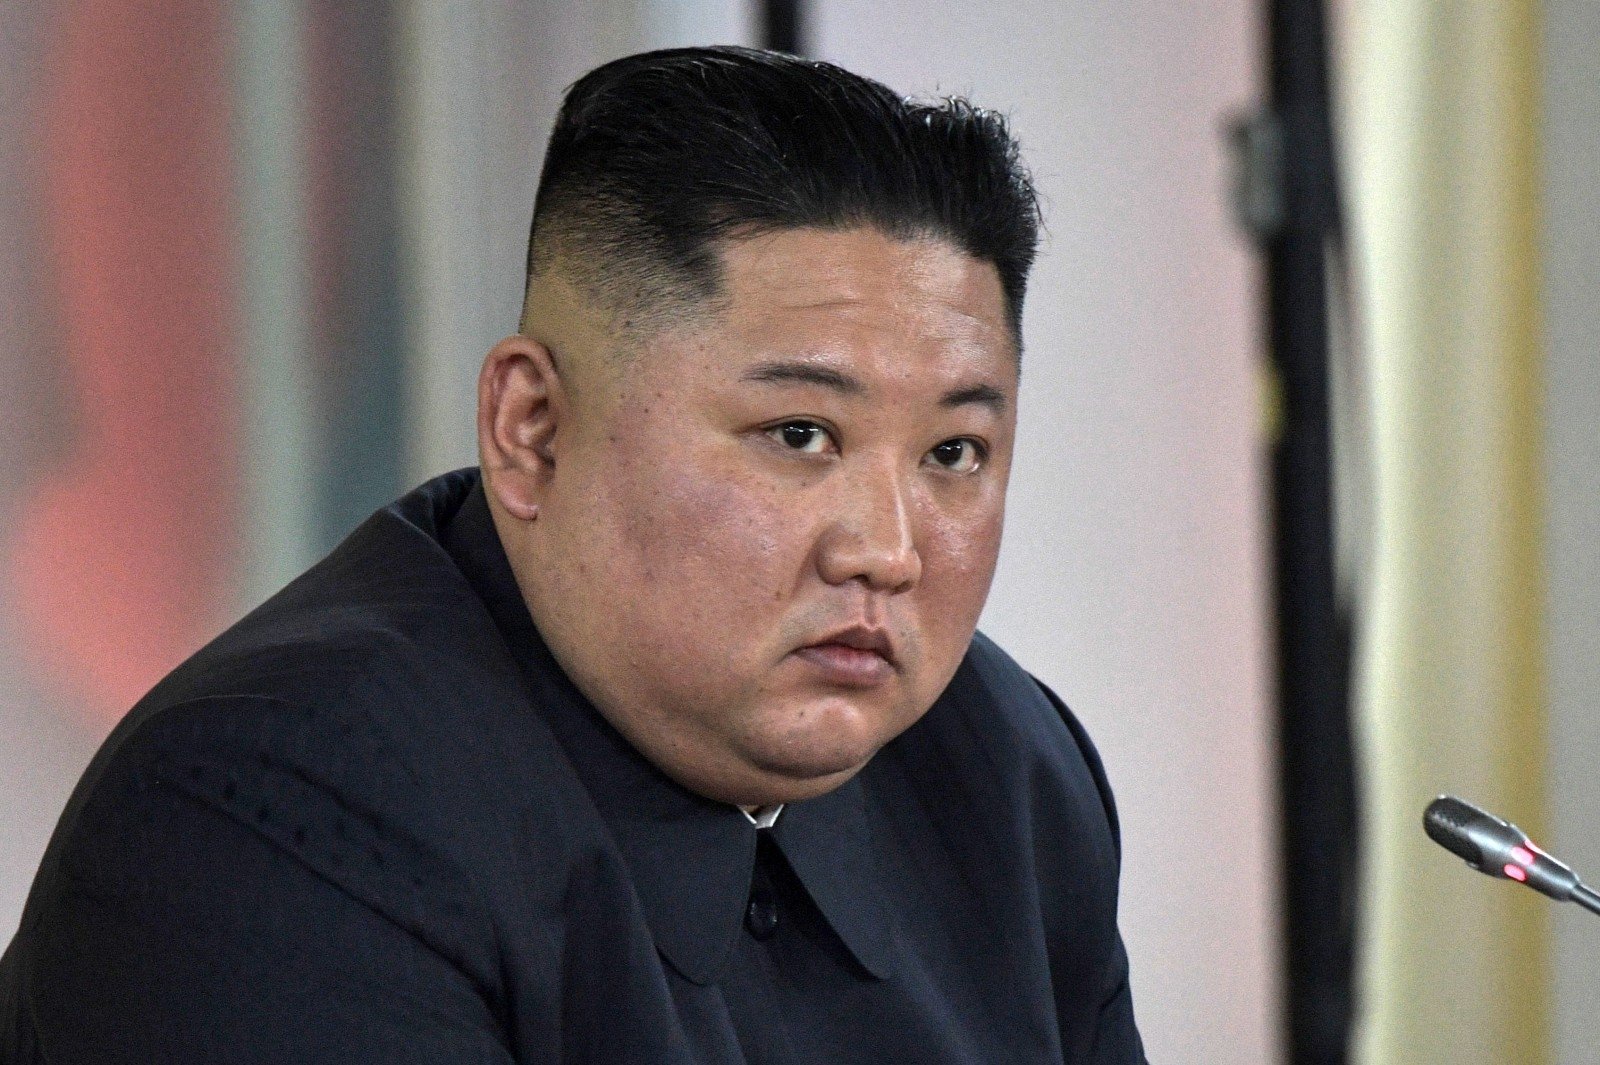 Кім Чен Ин зі сльозами вибачився за те, що не зміг поліпшити життя північнокорейців